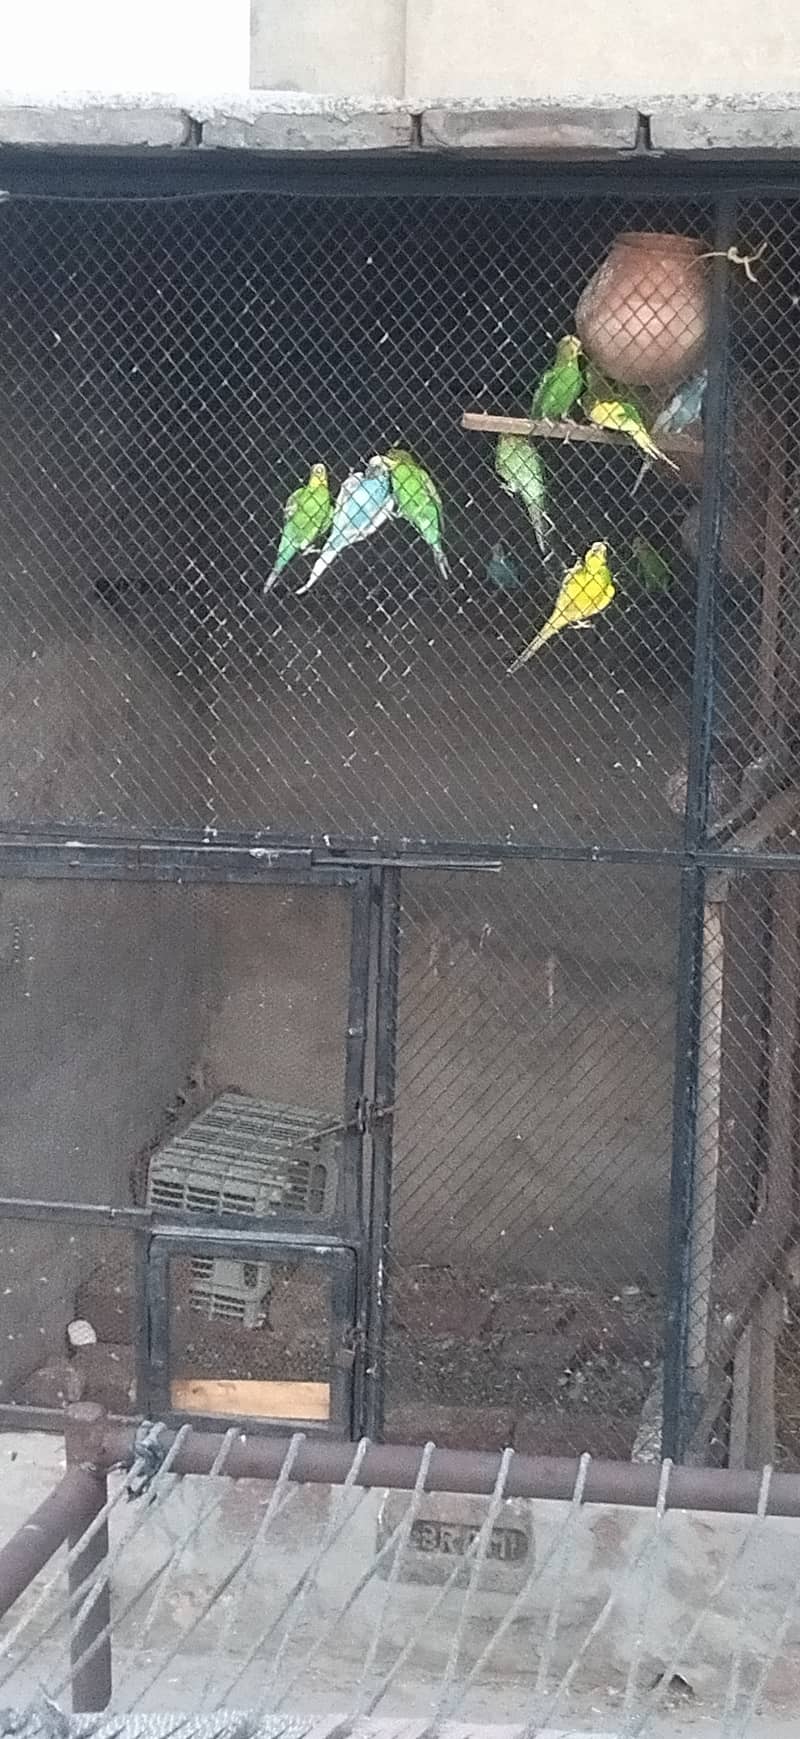 Australian parrots for sale 1